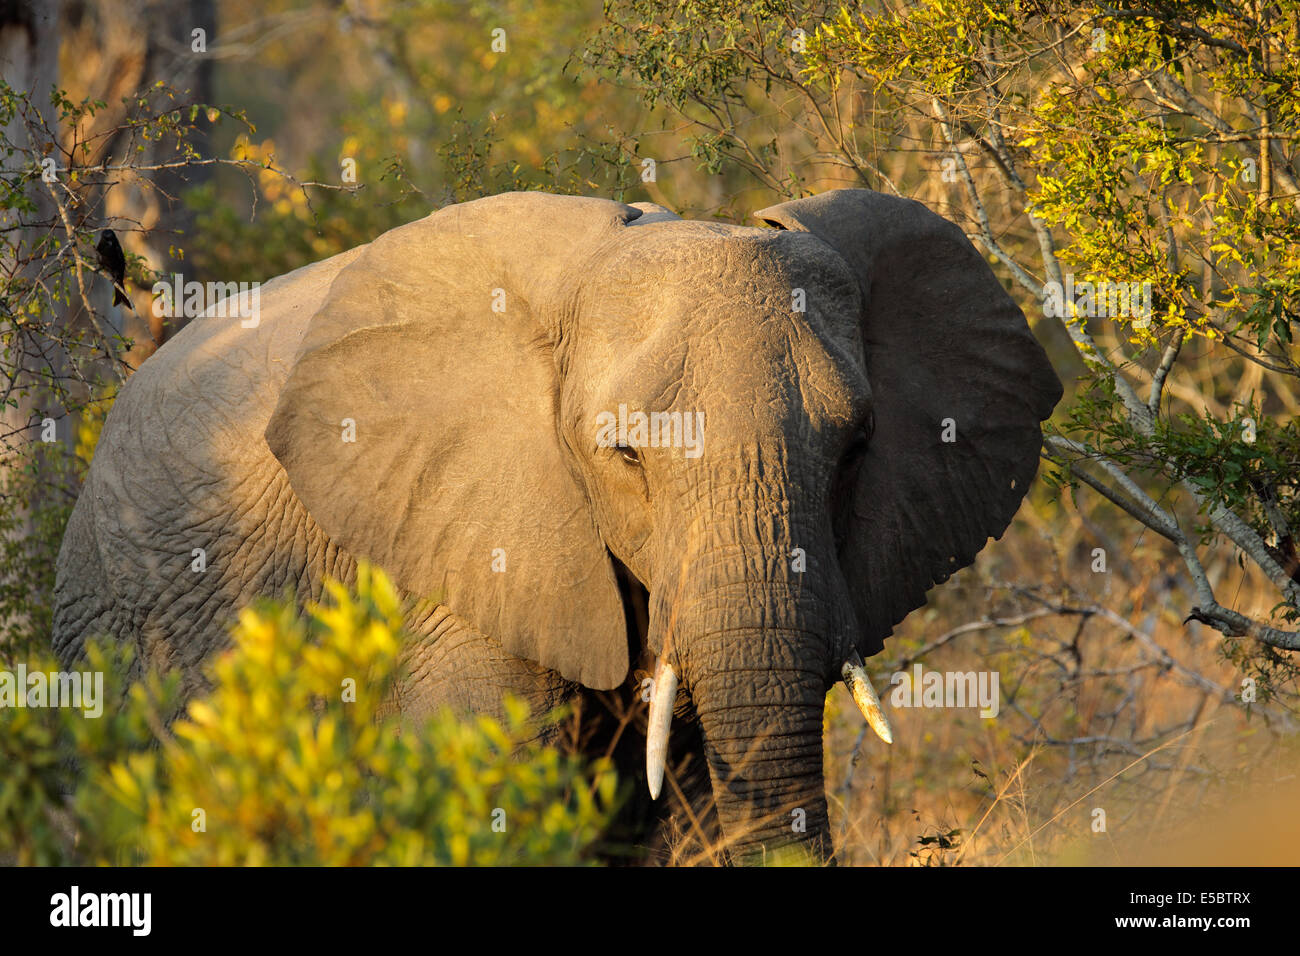 L'éléphant africain (Loxodonta africana) avec de grandes oreilles battantes, Sabie-Sand nature reserve, Afrique du Sud Banque D'Images